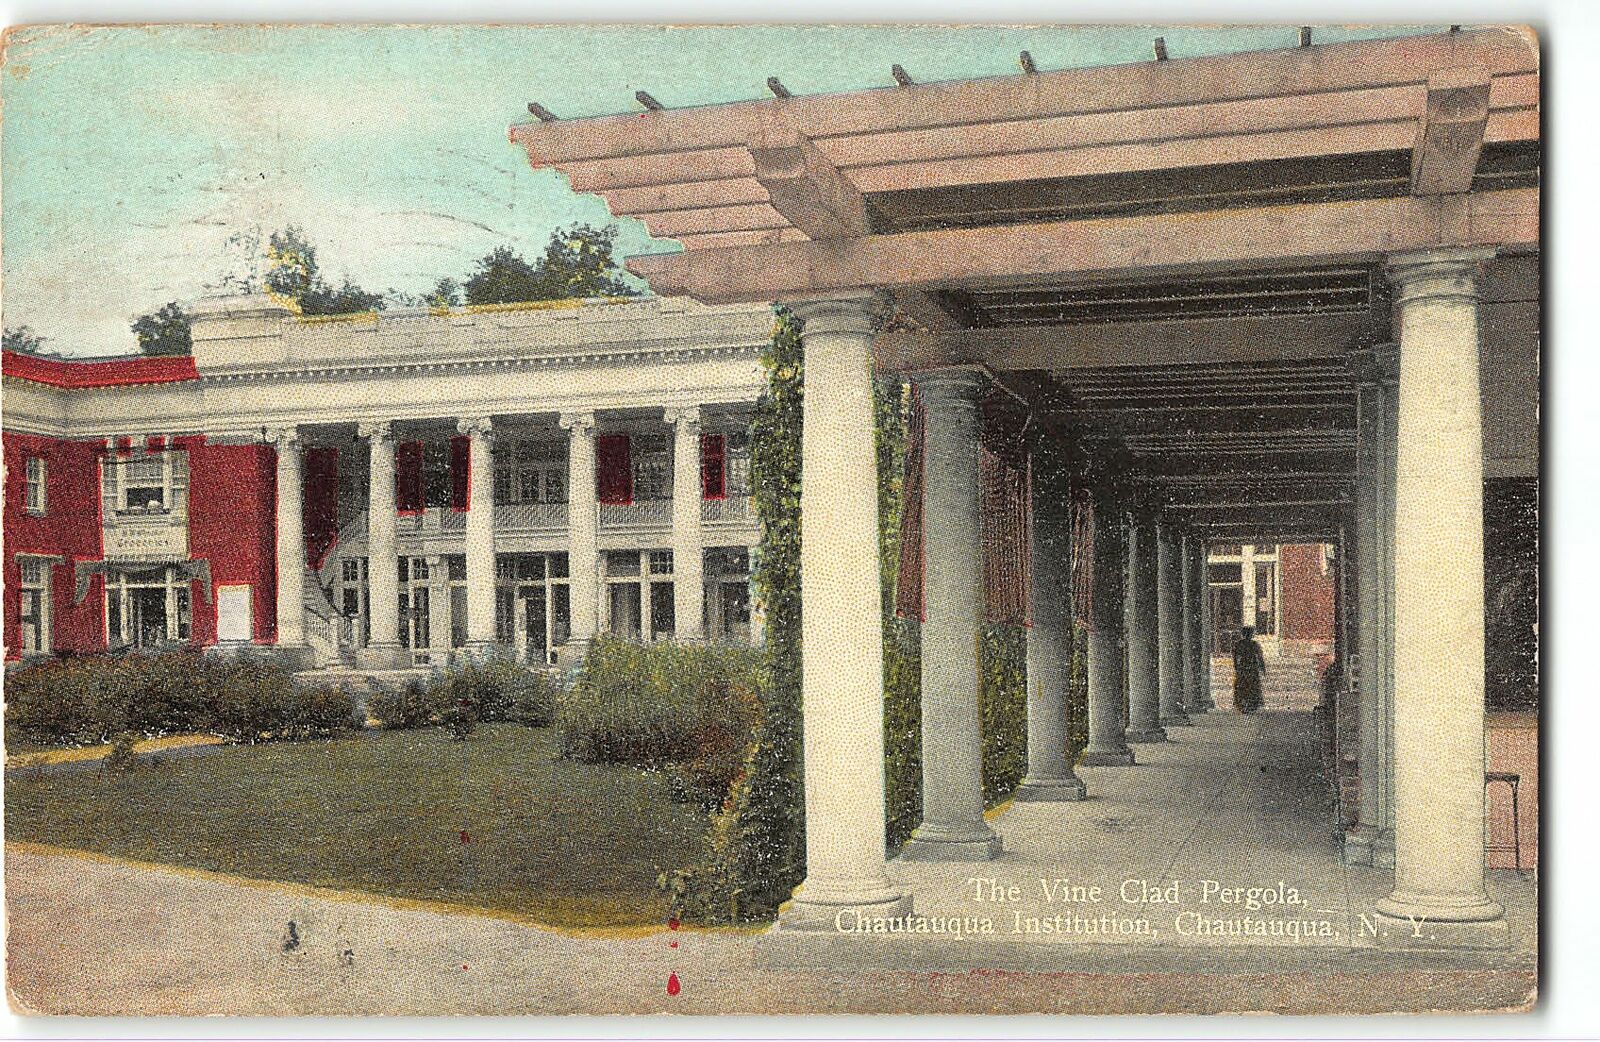 THE VINE CLAD PERGOLA - Chautauqua Institution, New York - 1912 Postcard